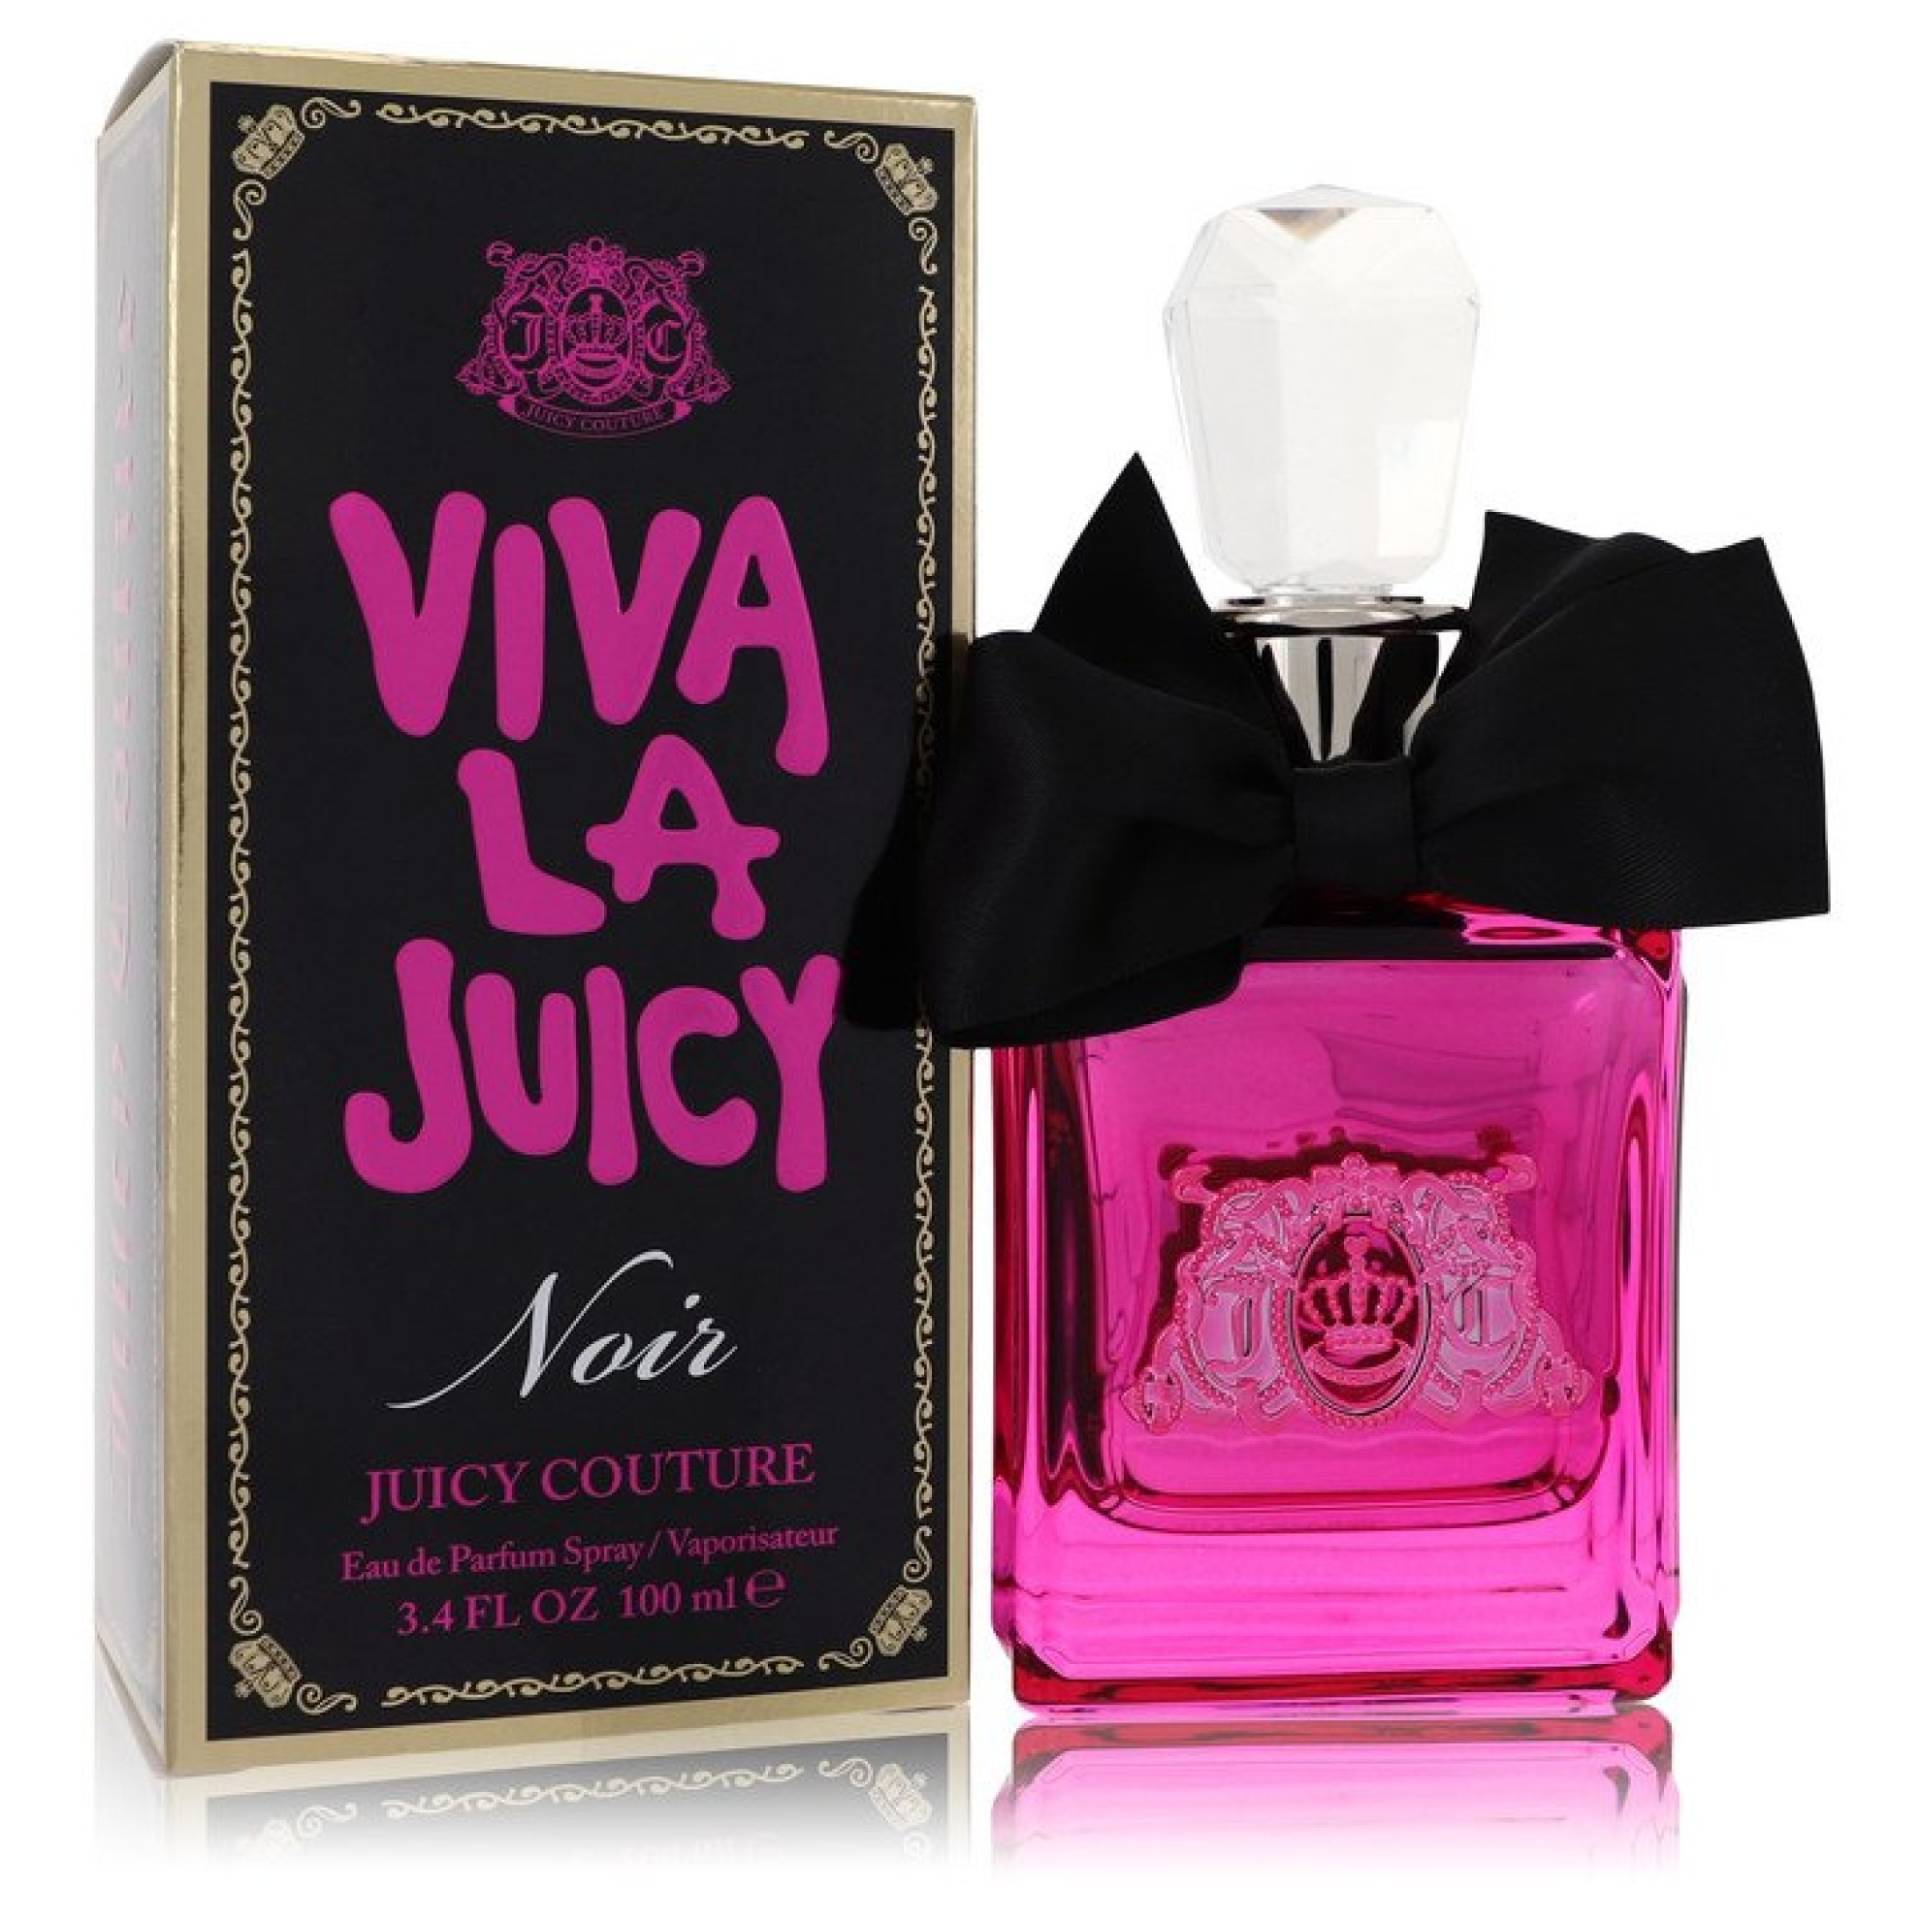 Juicy Couture Viva La Juicy Noir Eau De Parfum Spray 100 ml von Juicy Couture